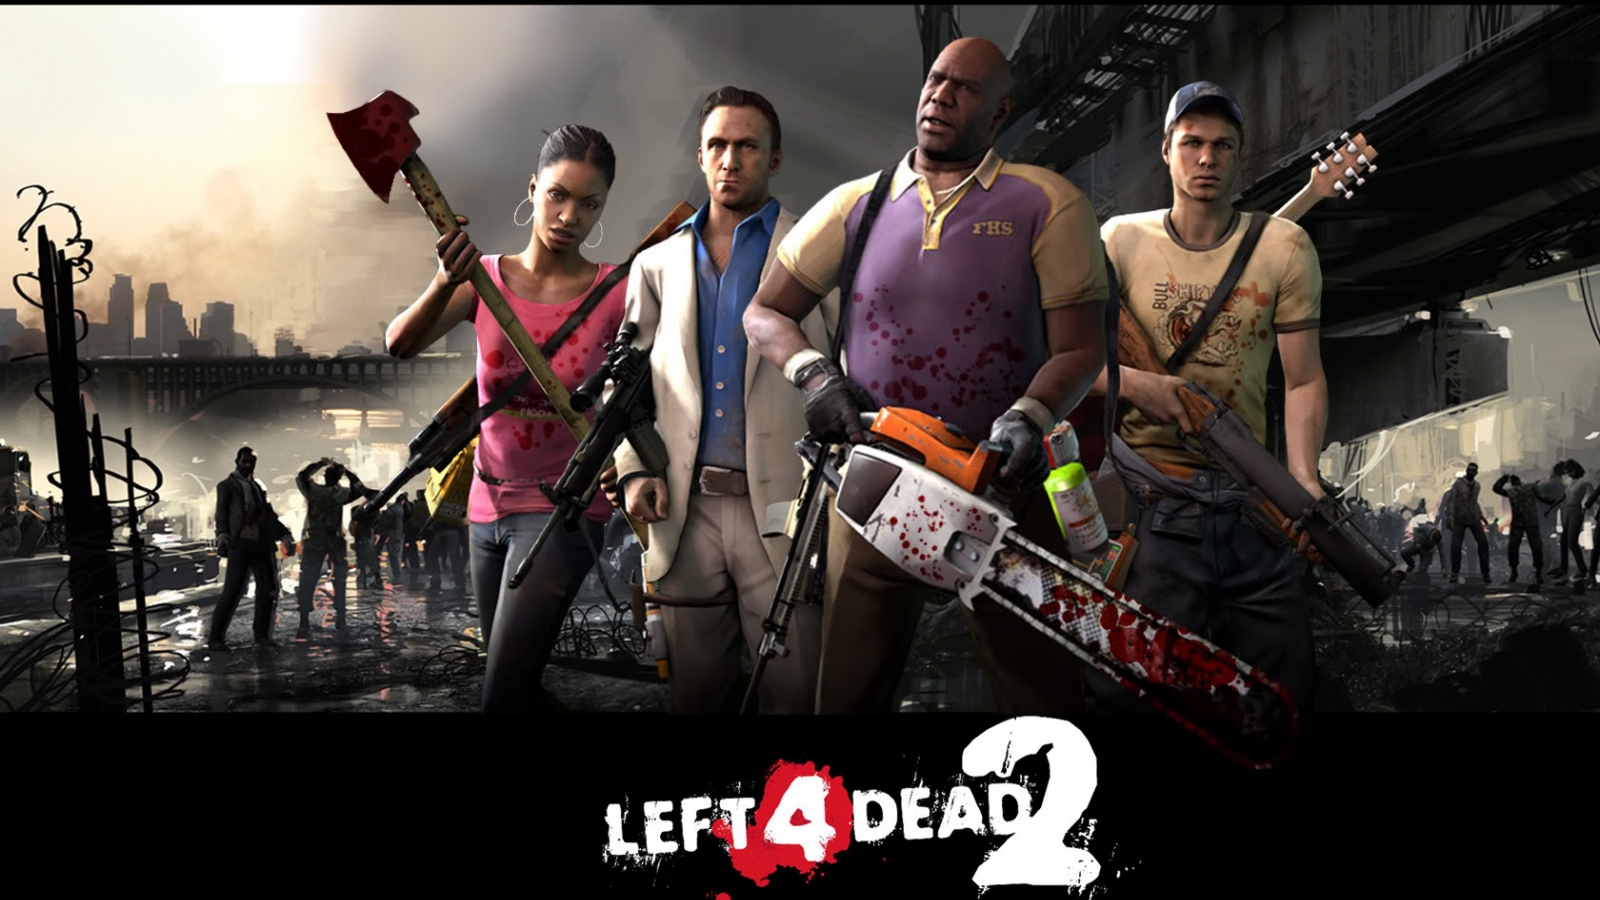 Left 4 Dead Left 4 Dead 2 Chainsaws Axes Guitar Gun Zombies Bridge Cityscape 1600x900